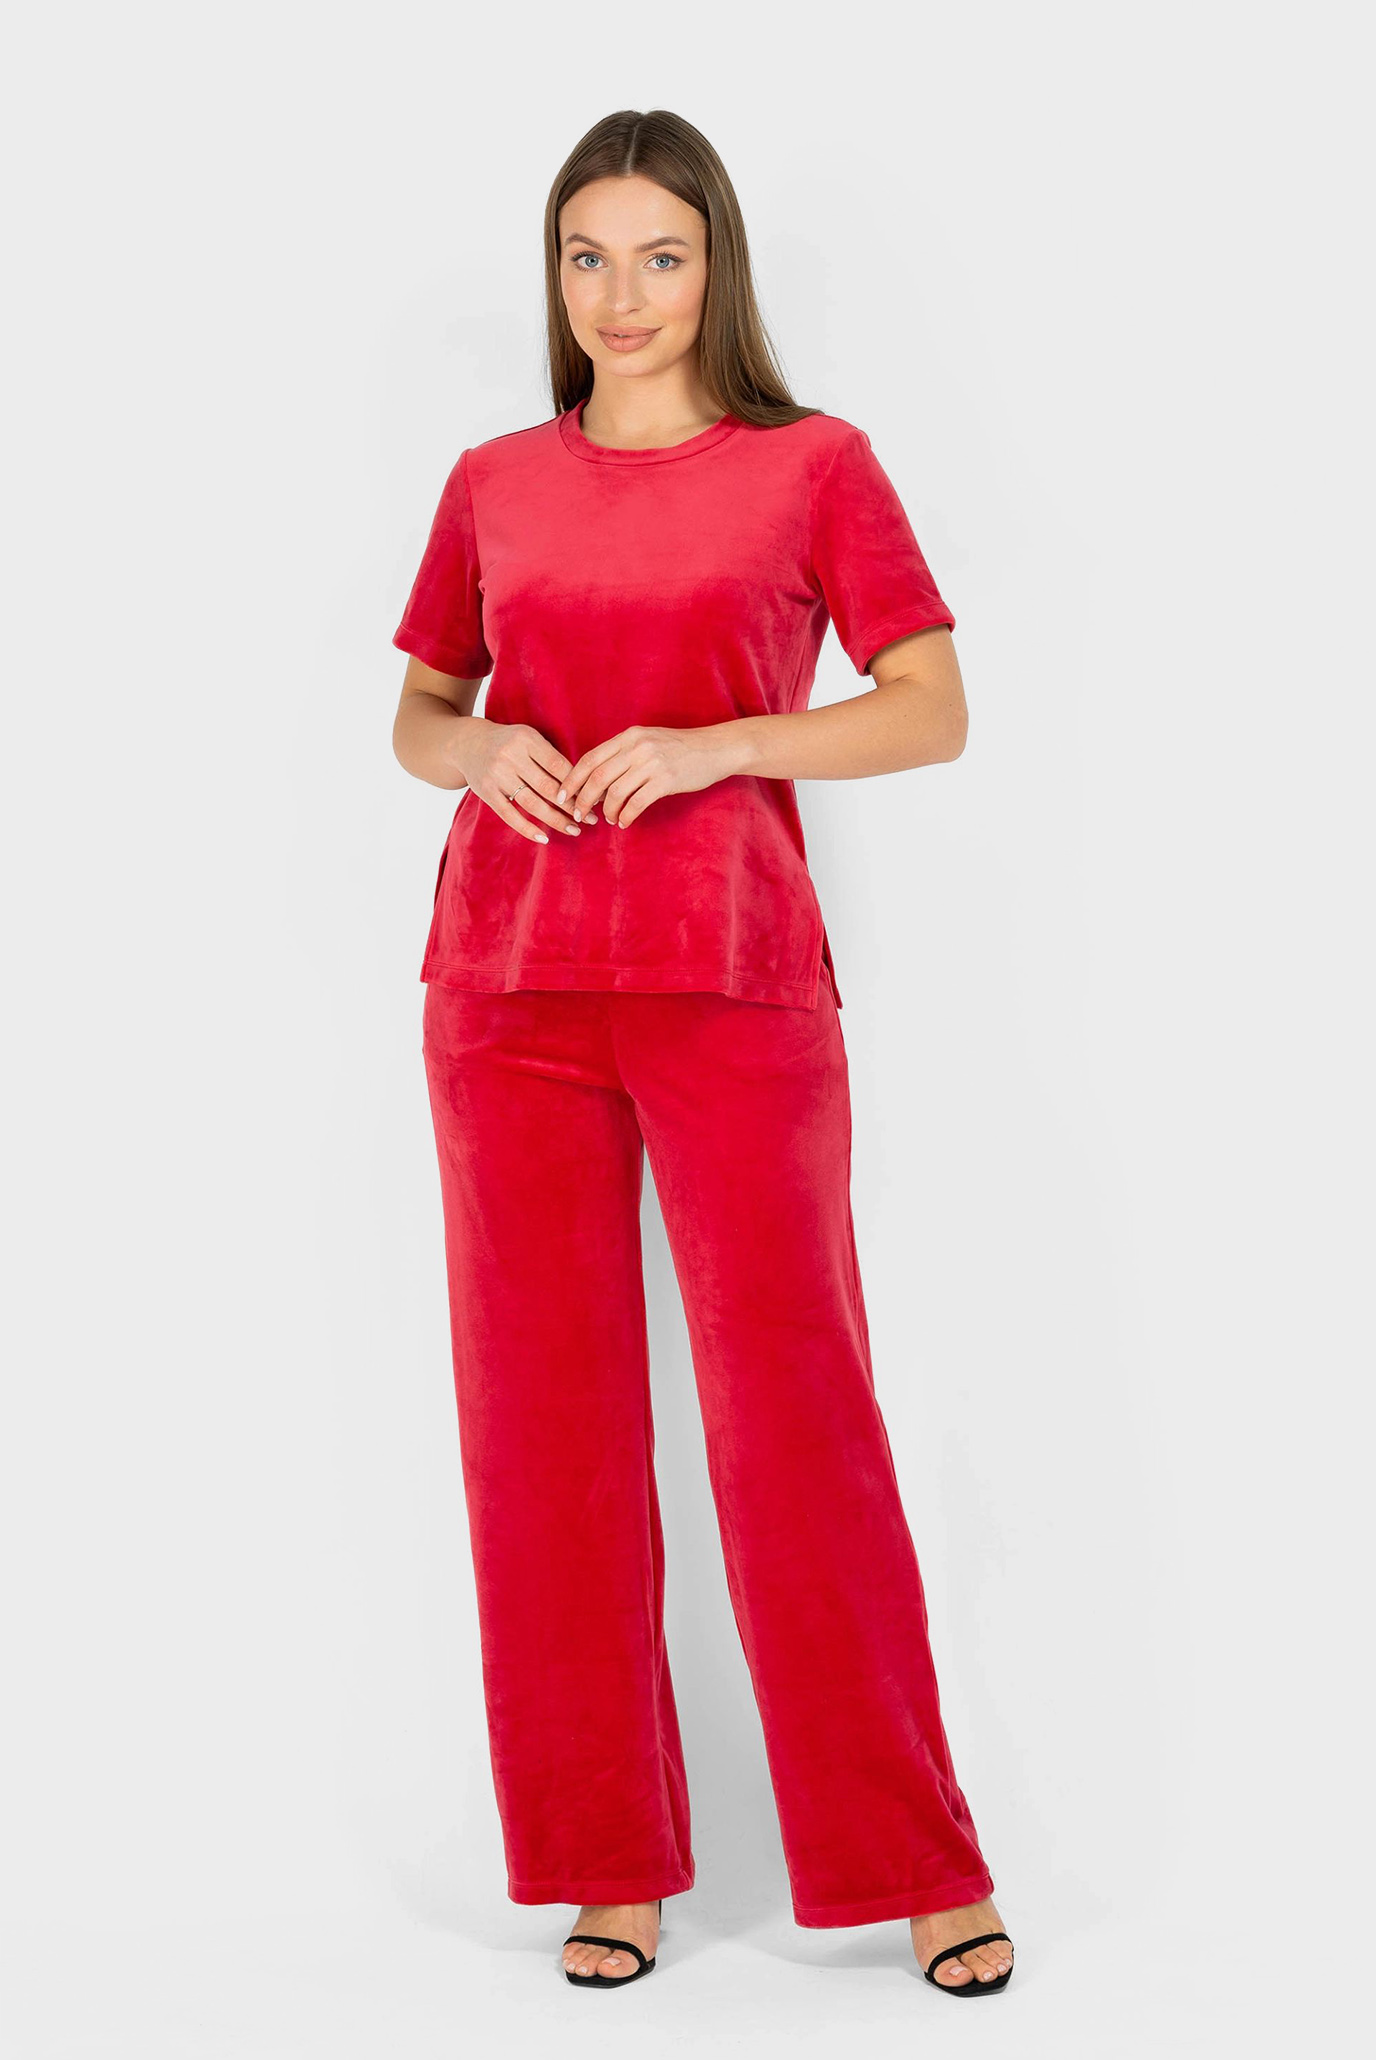 Женский красный велюровый комплект одежды (топ, брюки) 1